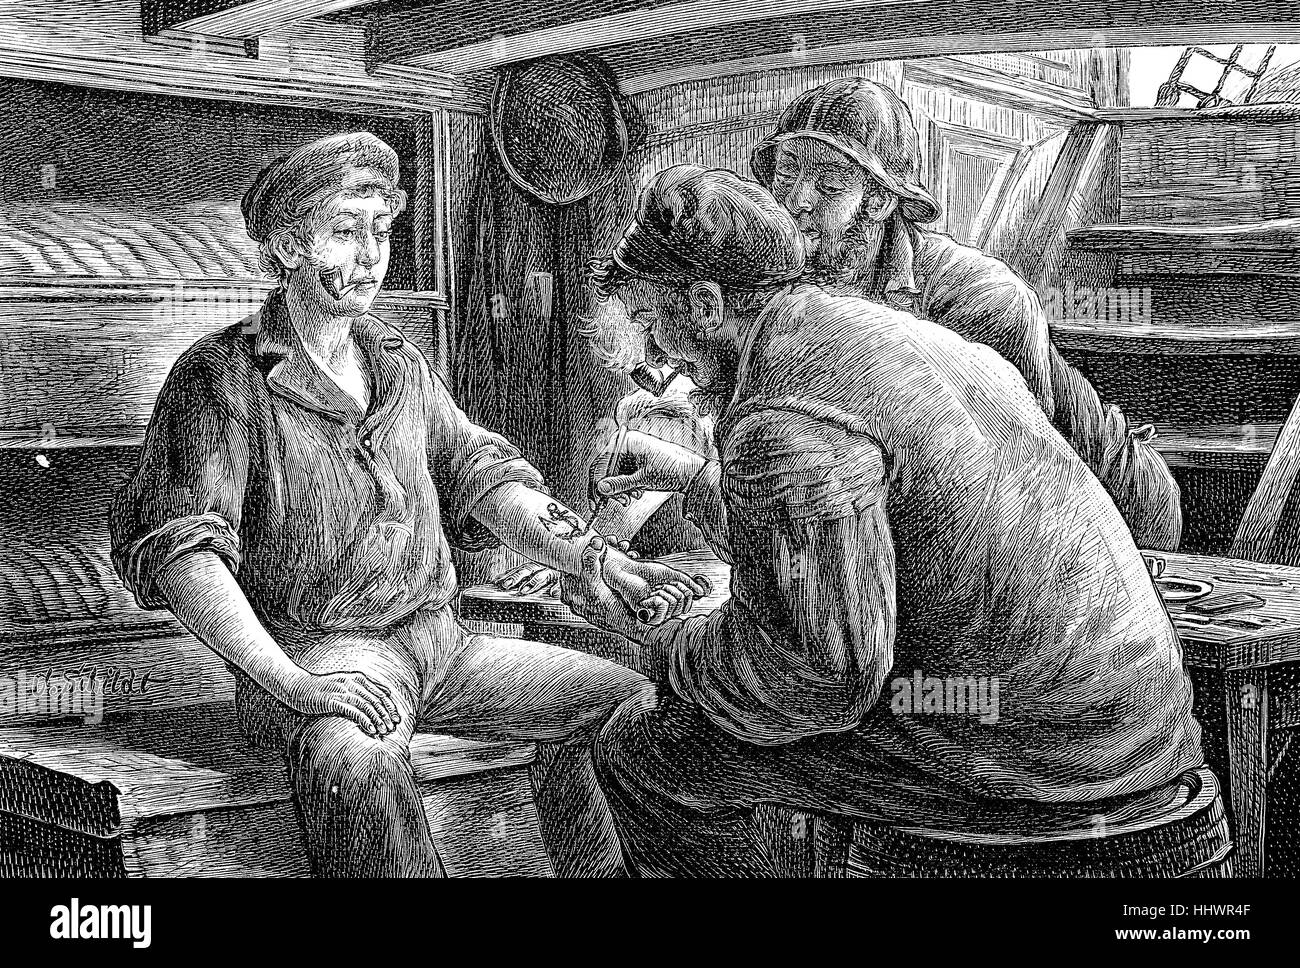 Tatuaggio un ragazzo sailor, disegni originali di Schildt, Germania, immagine storica o illustrazione, pubblicato 1890, digitale migliorata Foto Stock